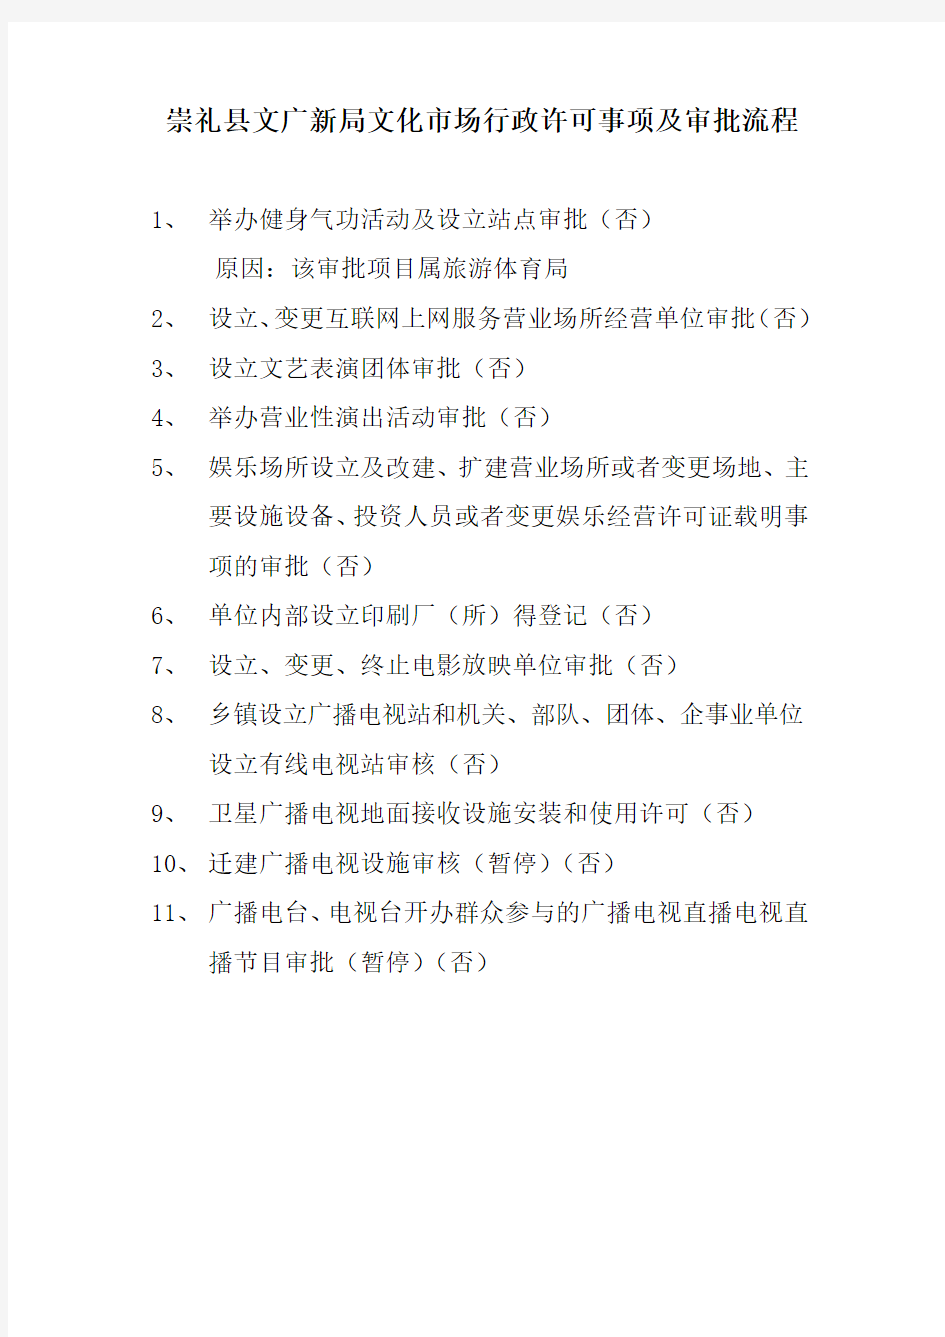 文广新局文化市场行政许可事项及审批流程